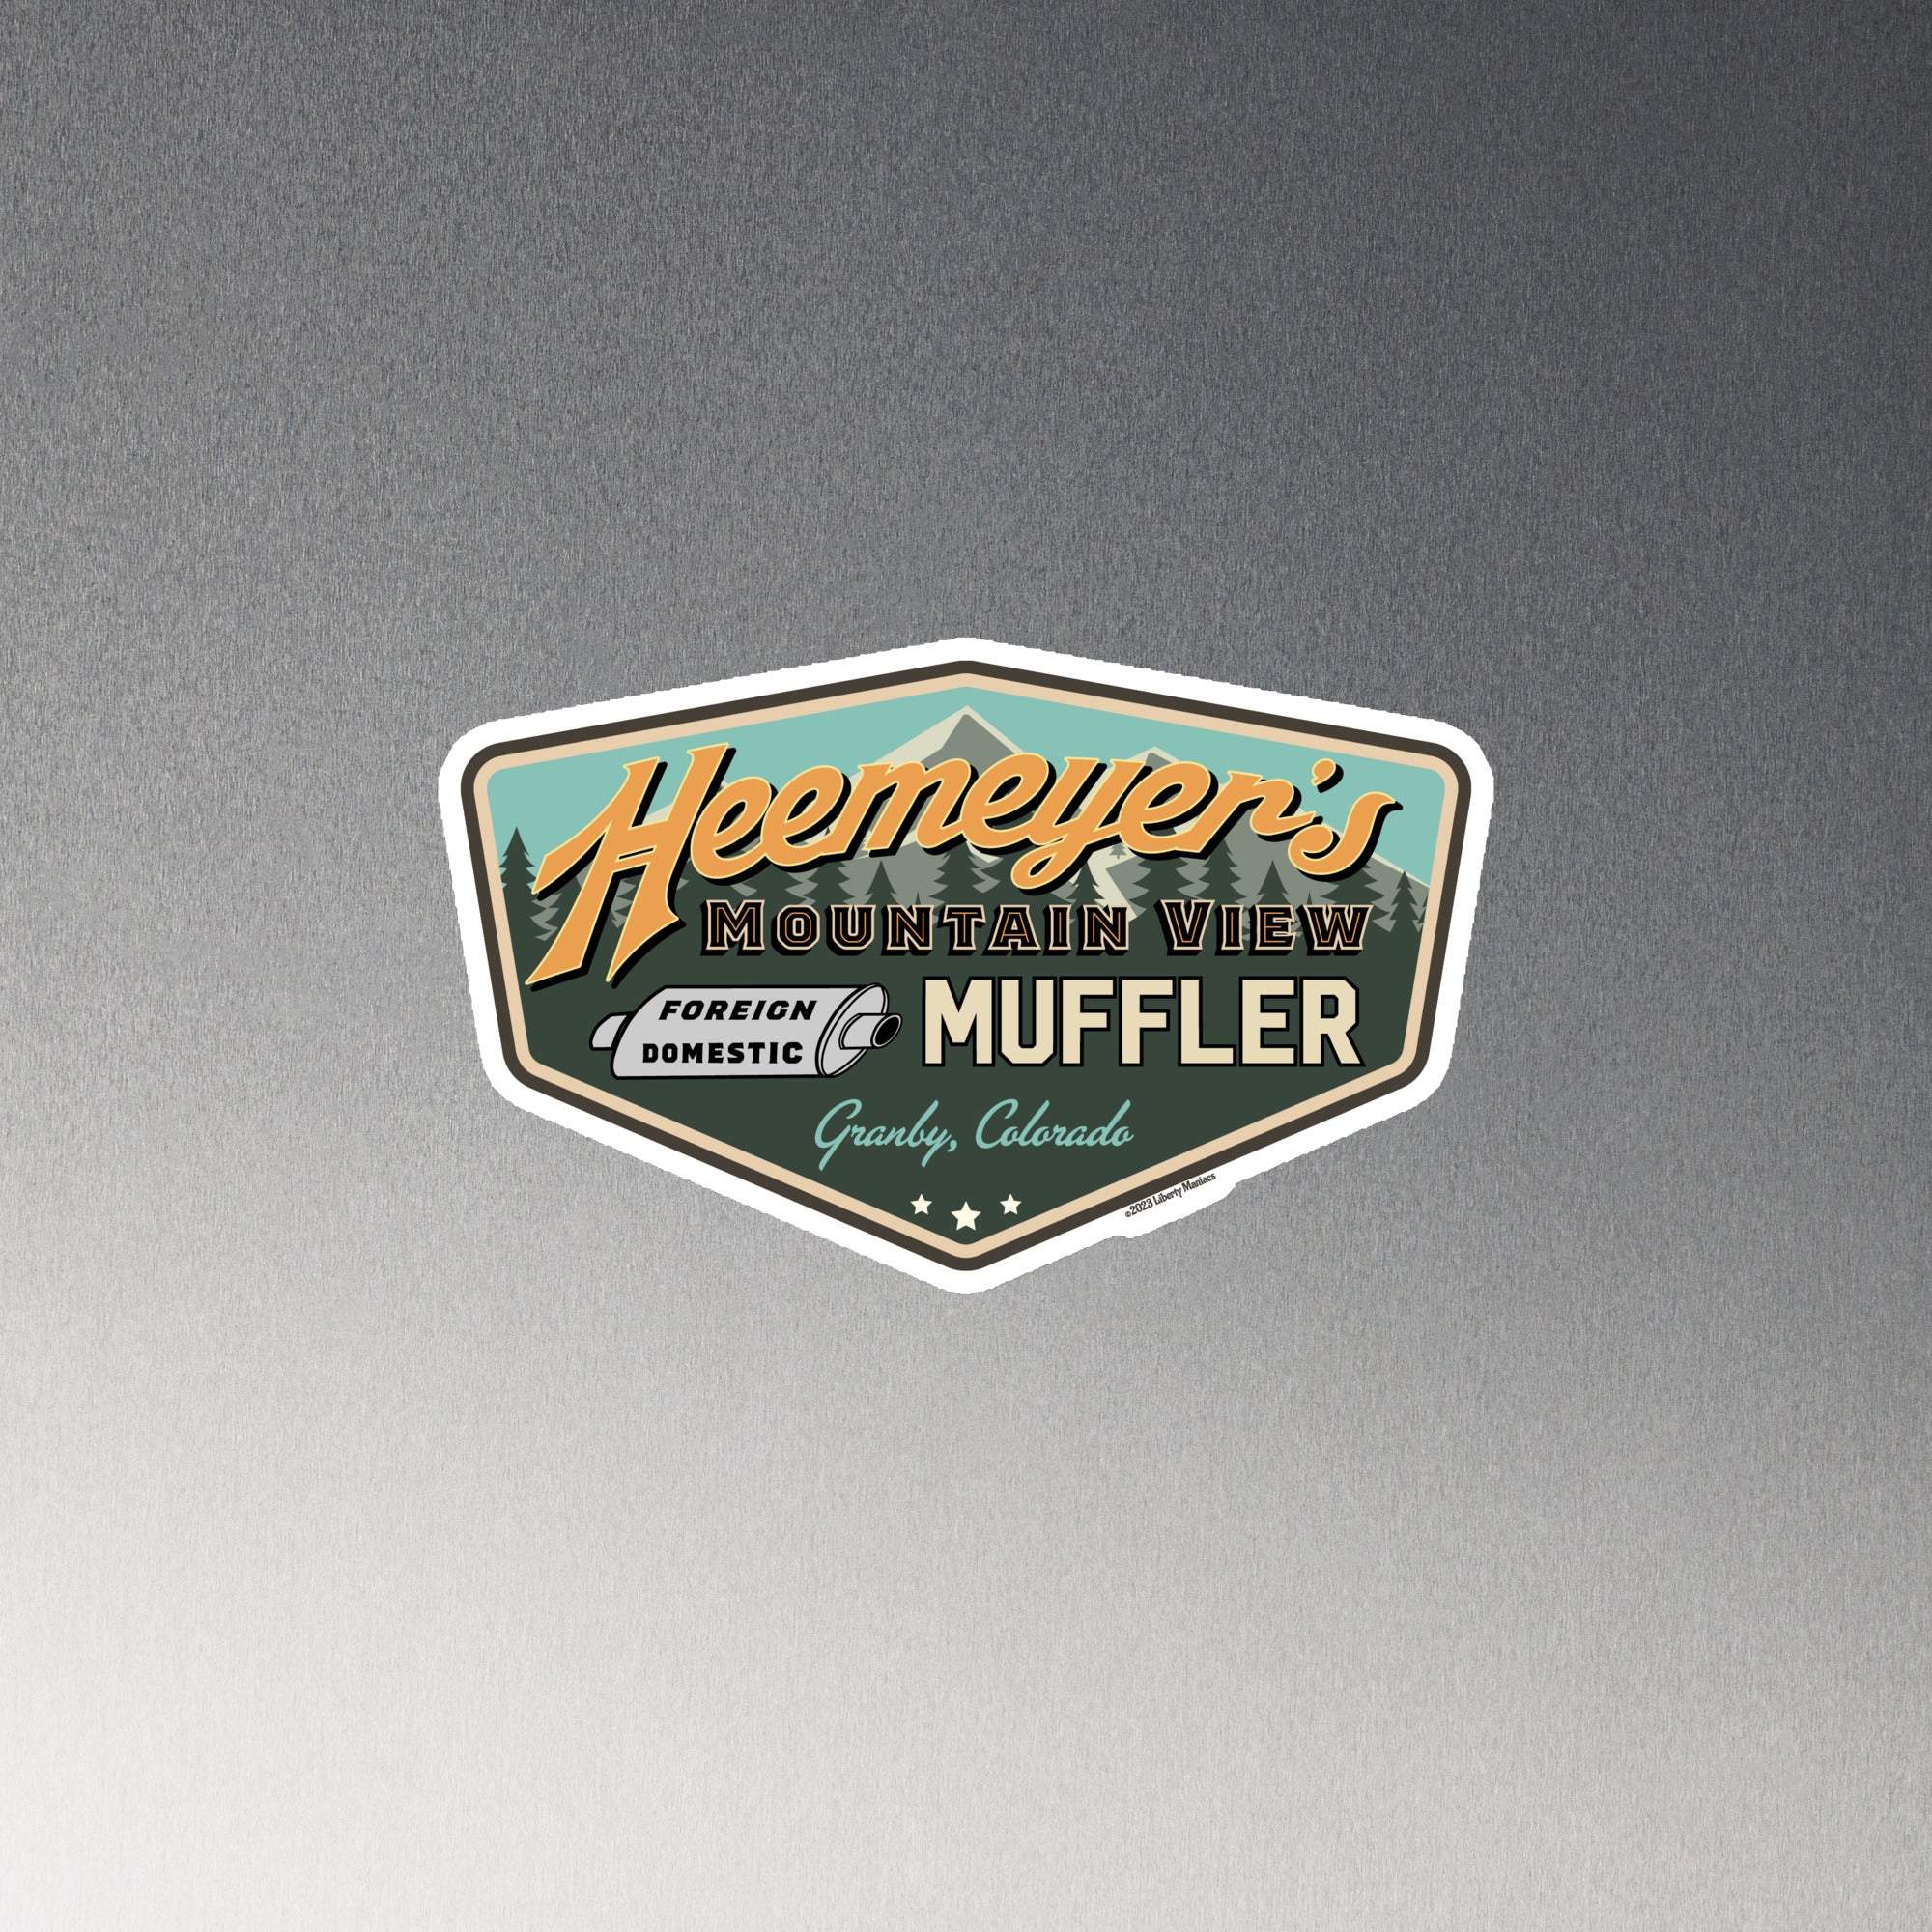 Heemeyer's Mountain View Muffler Magnet